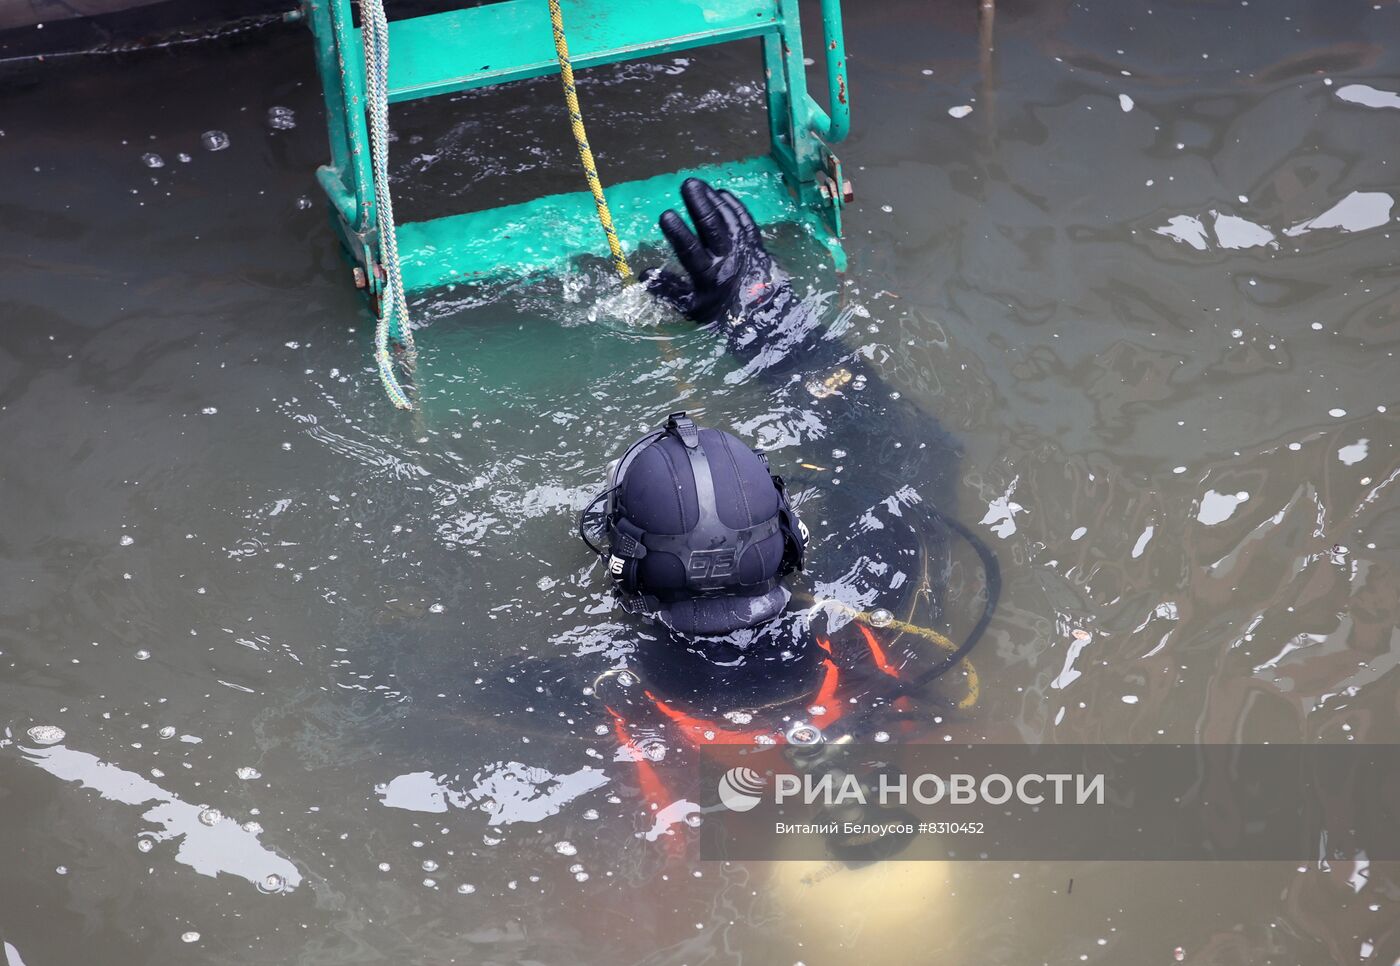 Работа Сыромятнического гидроузла в Москве